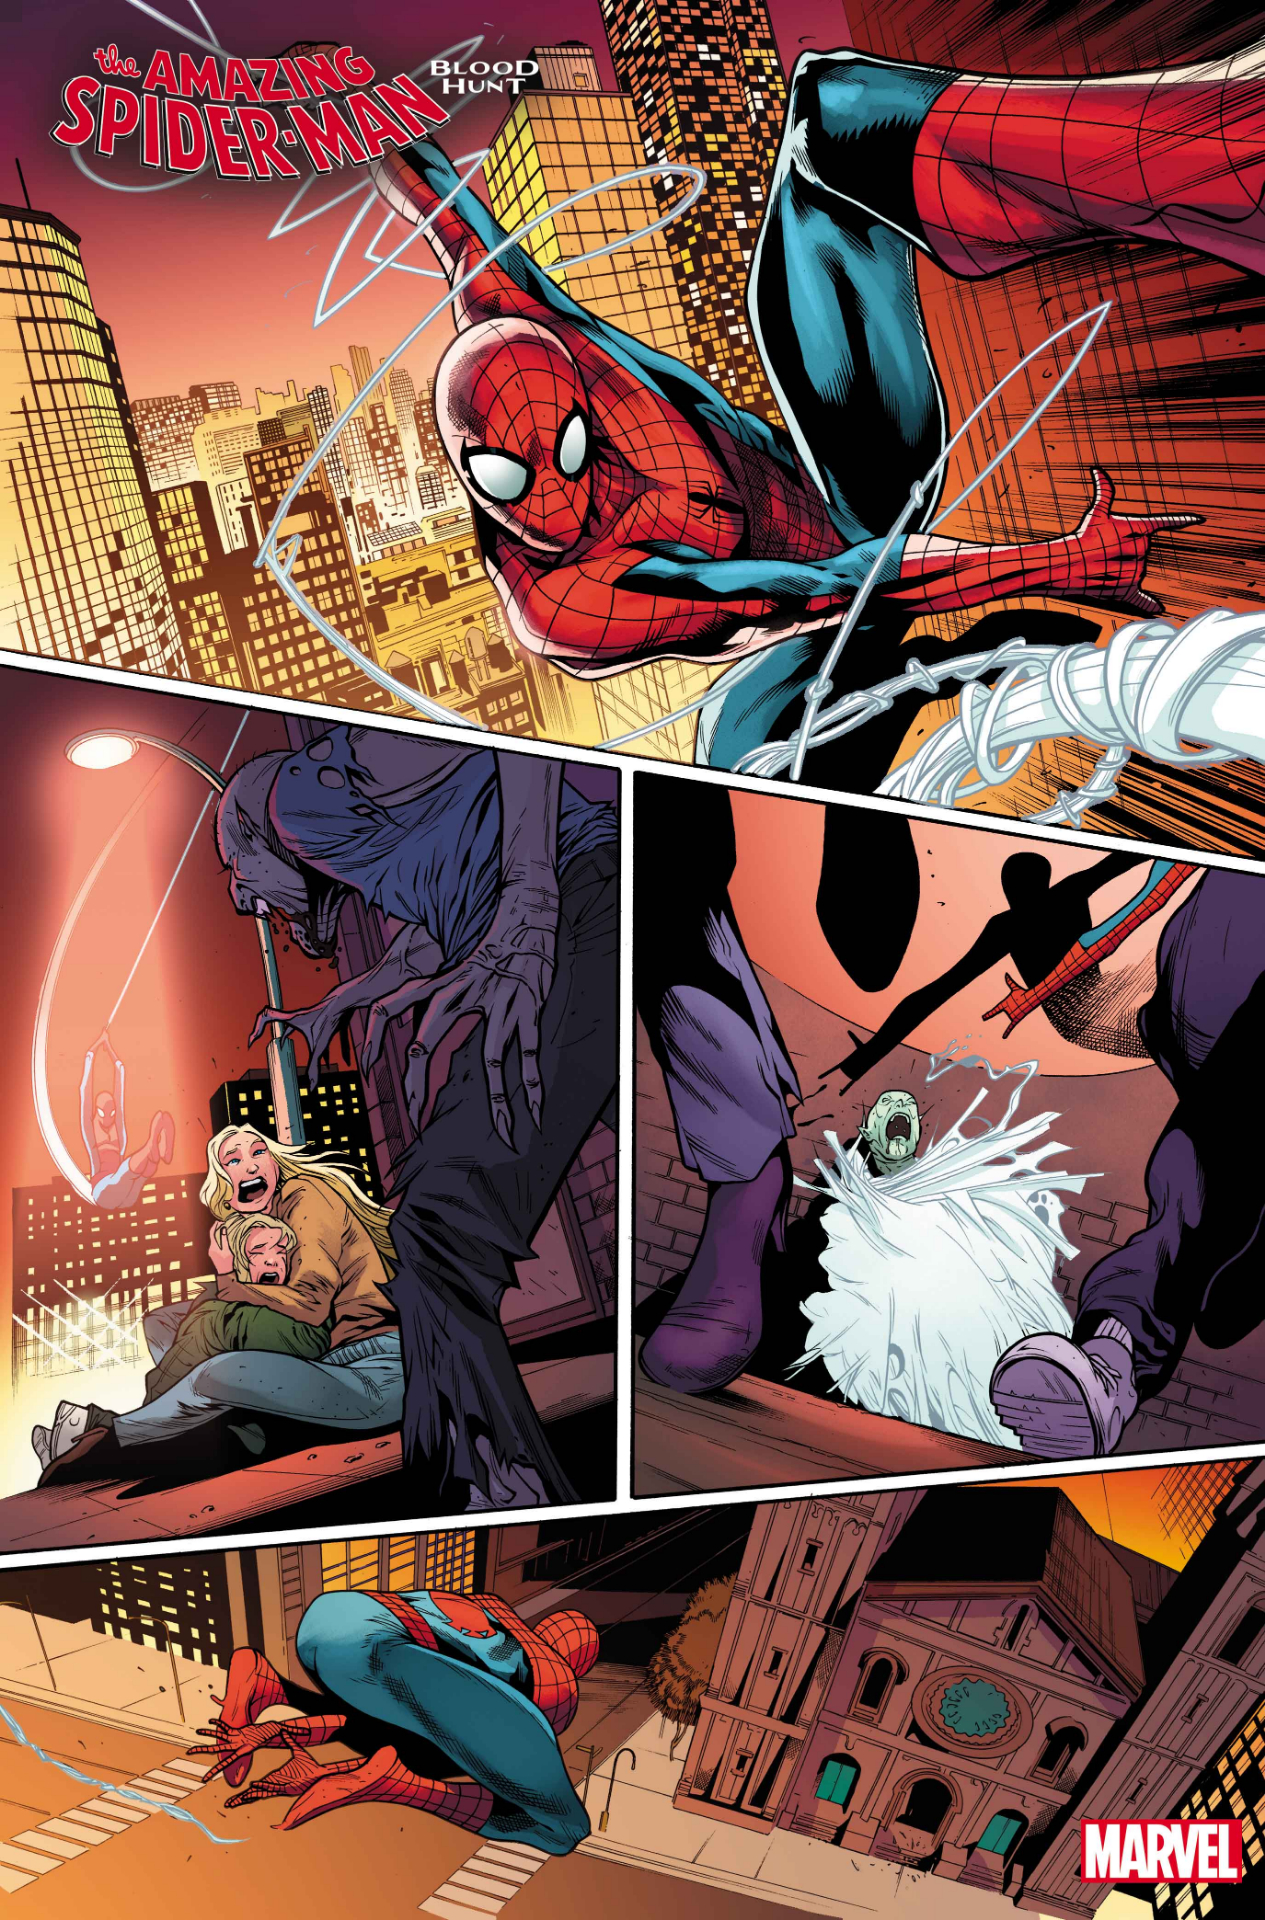 Spider-Man : La chasse au sang #1